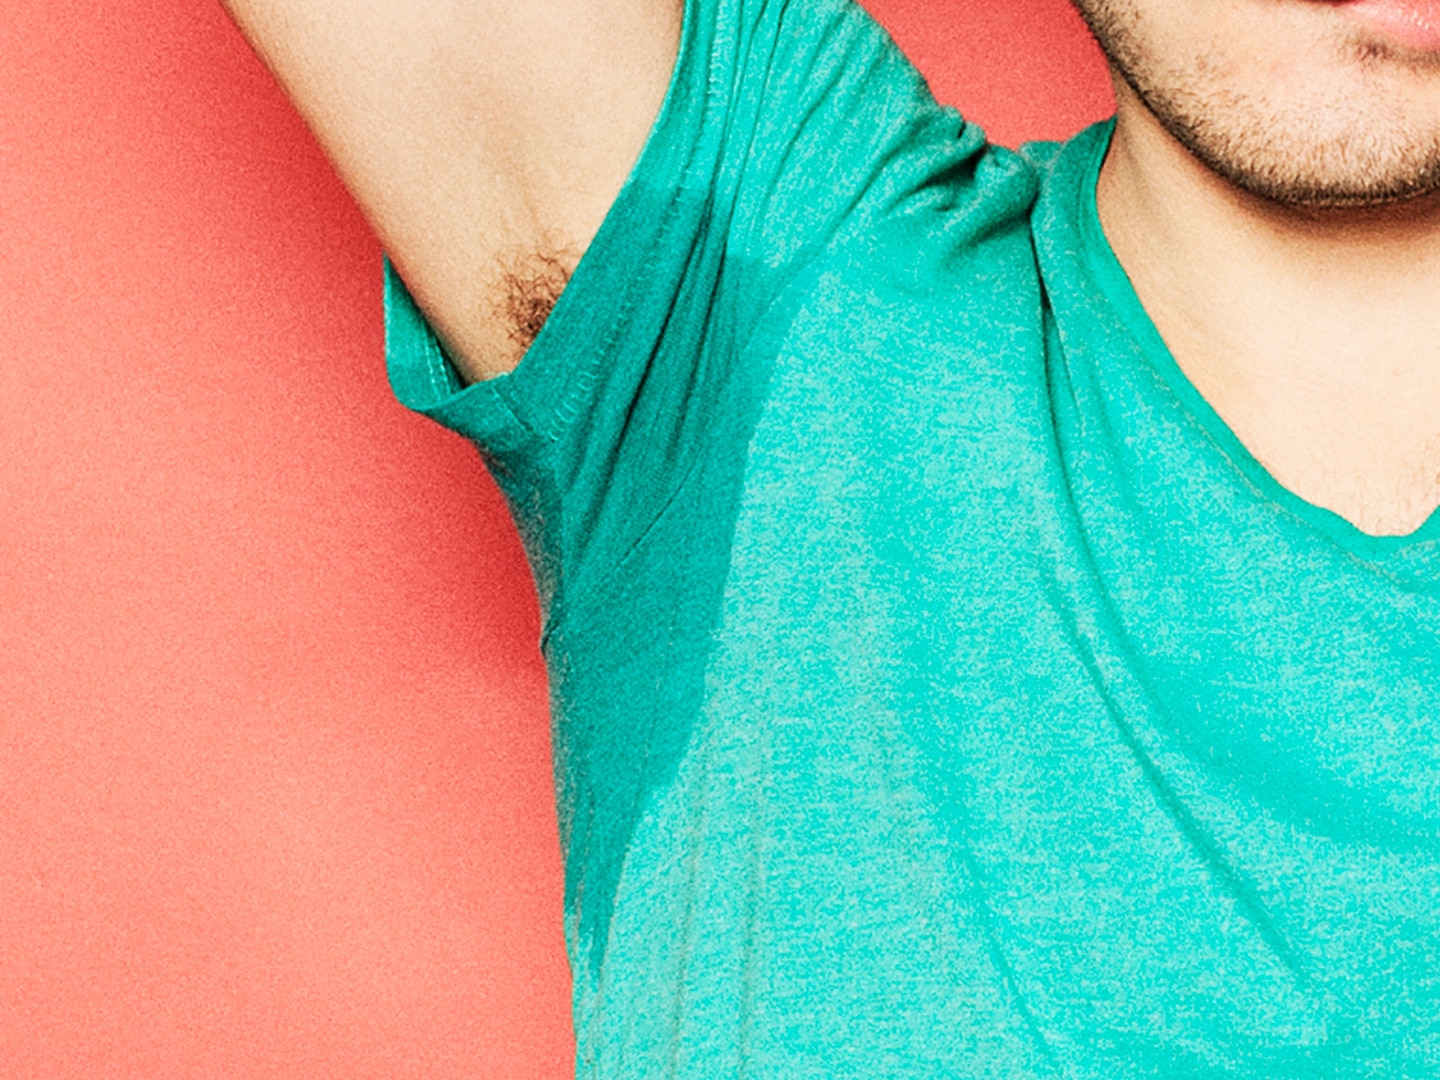 an armpit sweating through a light blue t-shirt